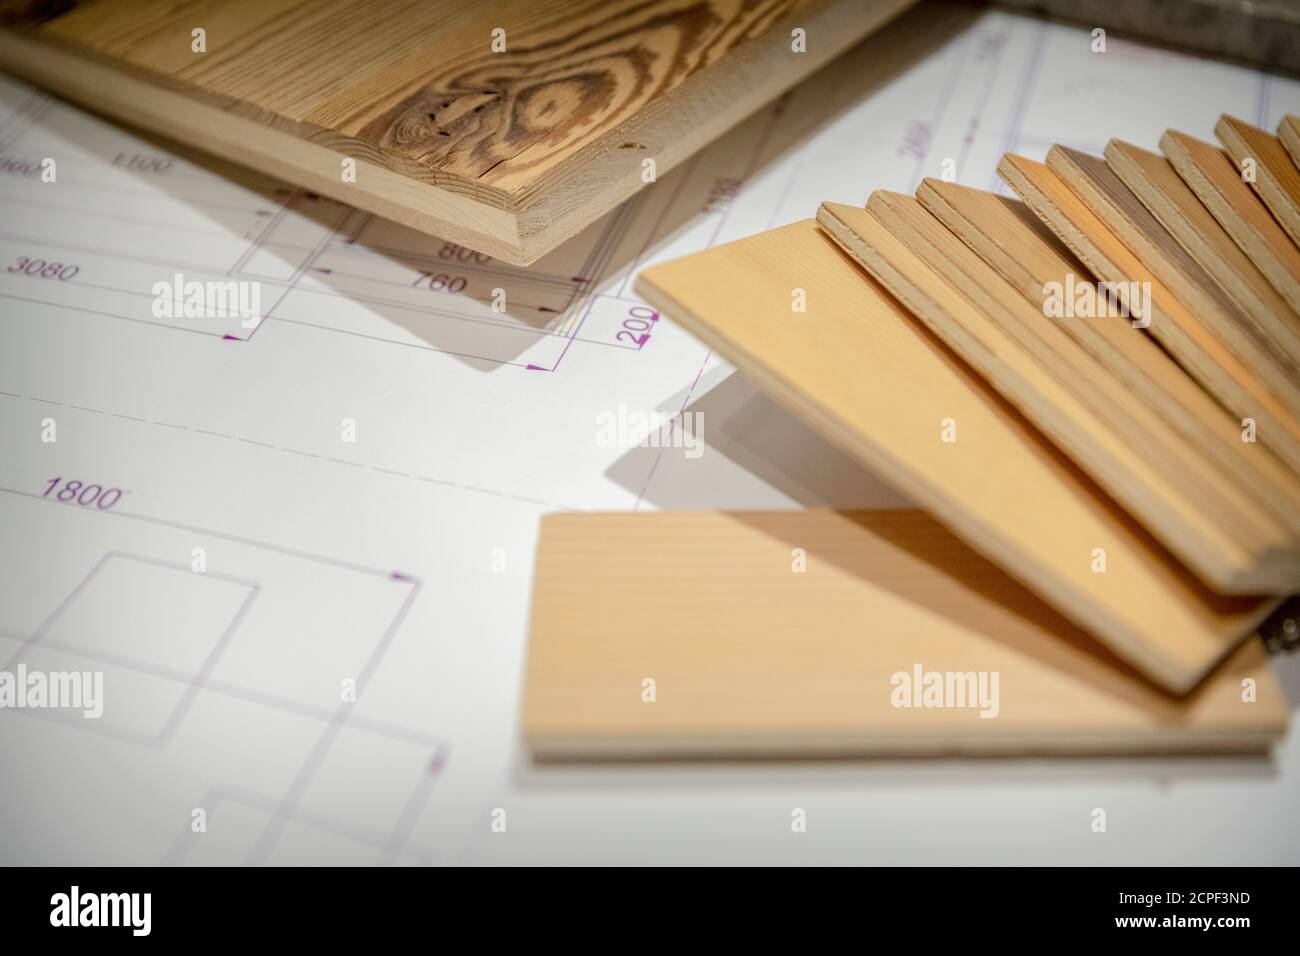 Die Zimmerei, die Holzmöbel, die technische Zeichnung und die Muster verschiedener Holzarten unter dem Schreibtisch Stockfoto